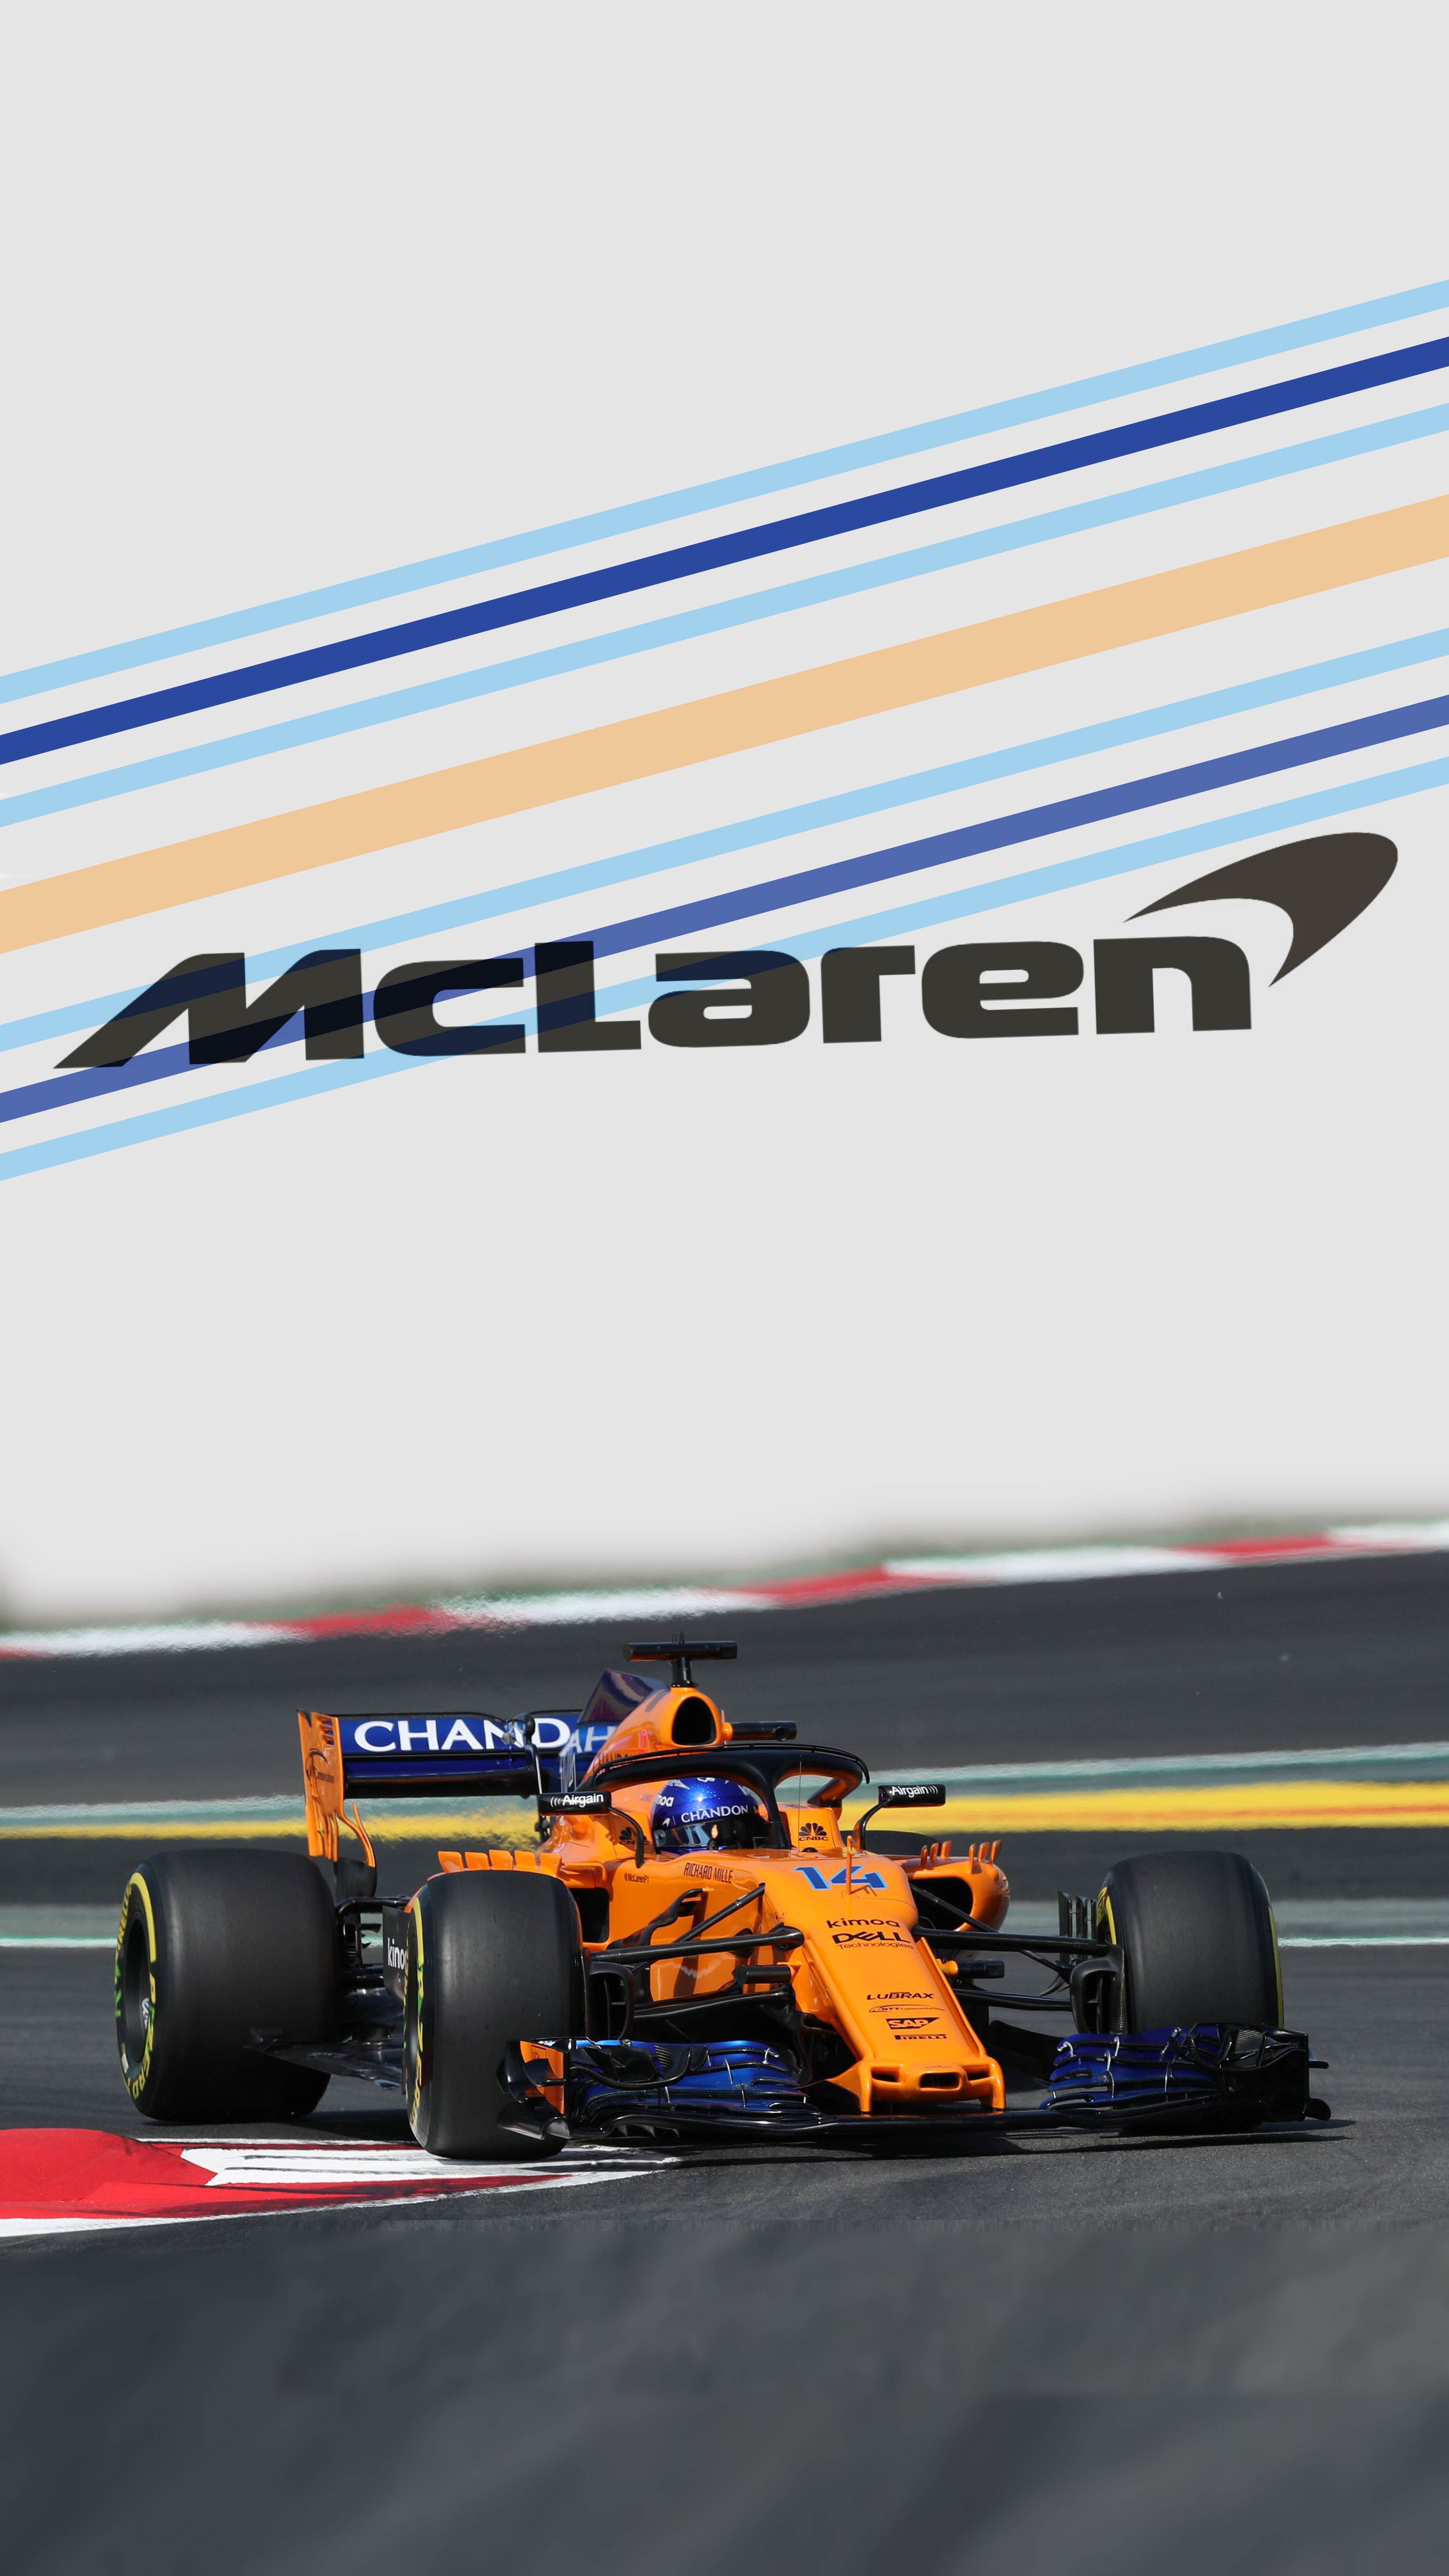 McLaren F1 Phone Wallpaper